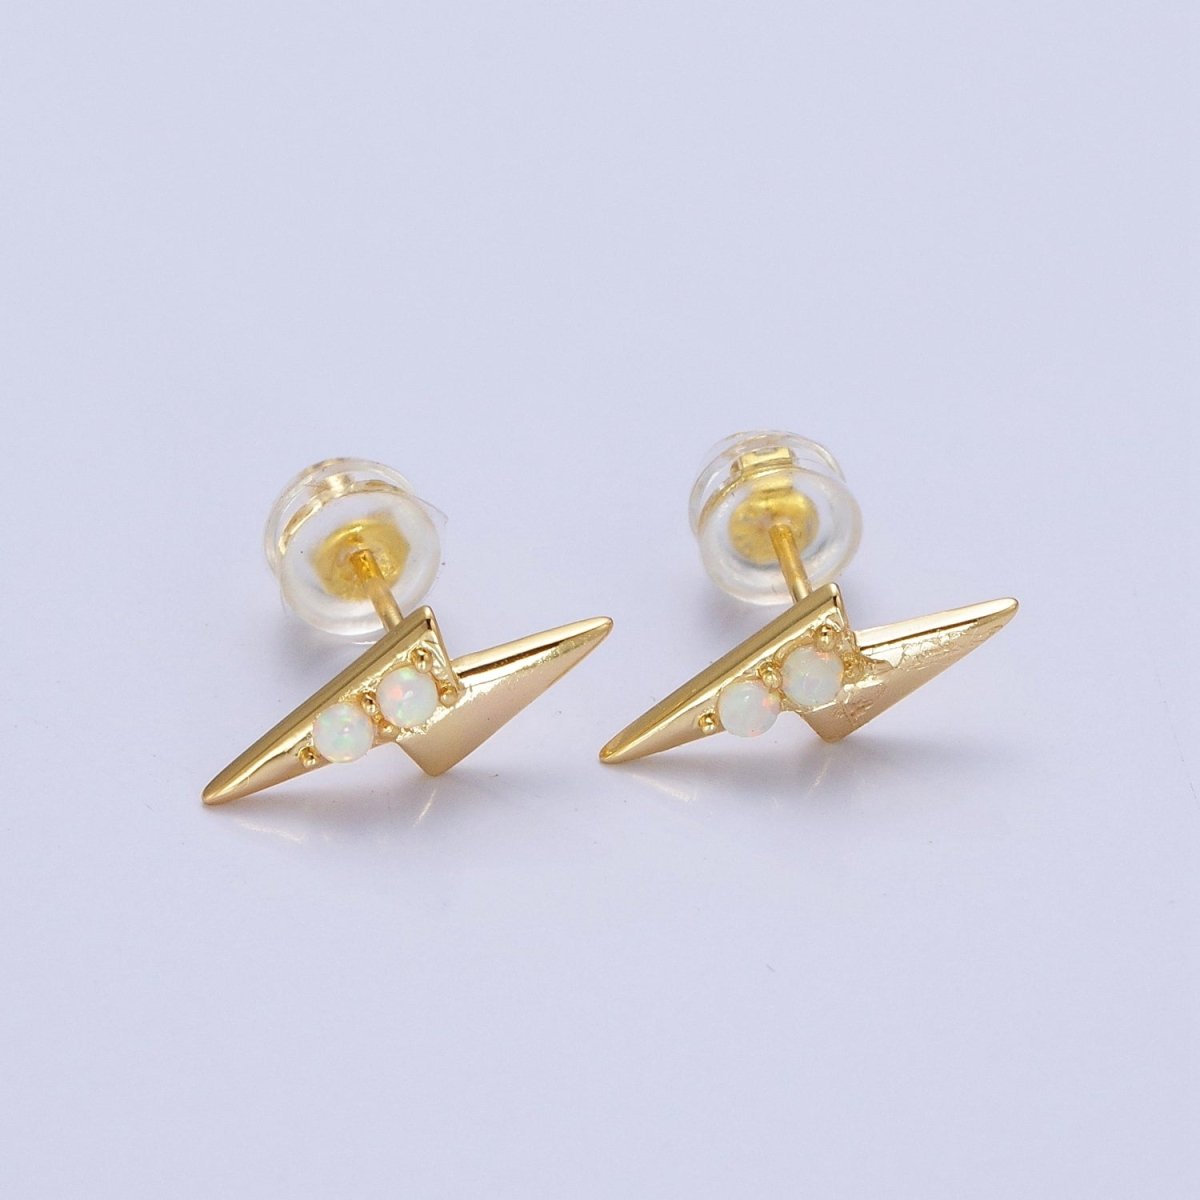 Mini 14K Gold Filled Lightning Bolt Round White Opal Stud Earrings | Y-091 - DLUXCA